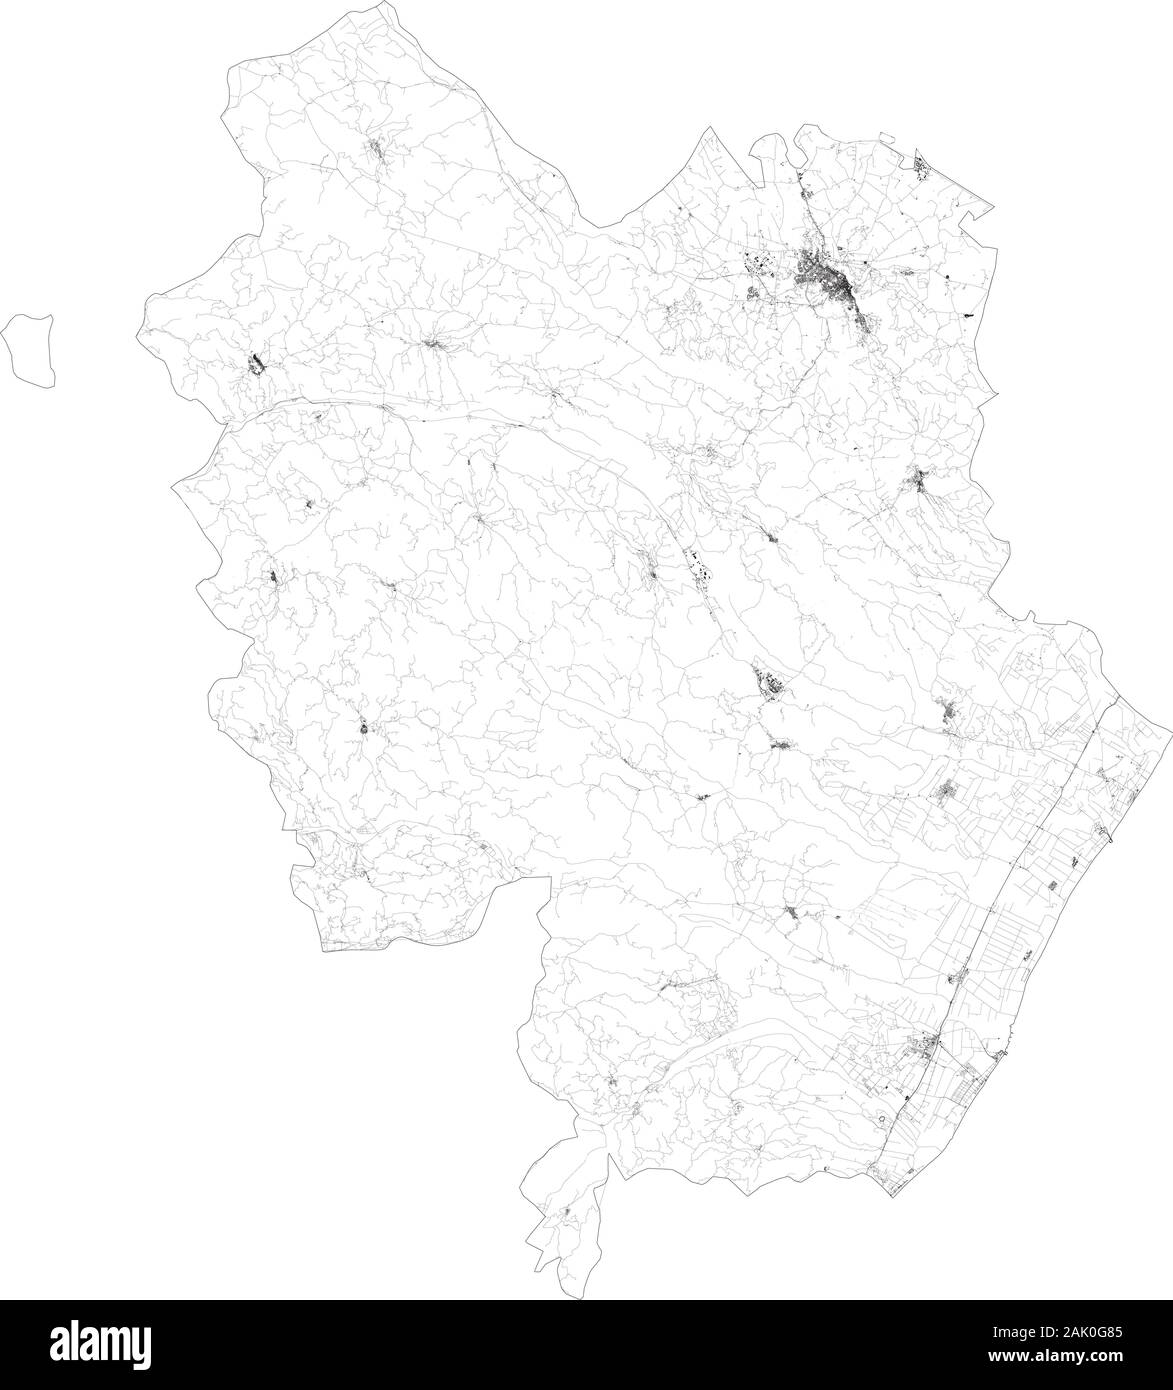 Sat-Karte der Provinz von Matera, Städte und Straßen, Gebäude und Straßen der Umgebung. Region Basilicata, Italien. Karte Straßen Stock Vektor